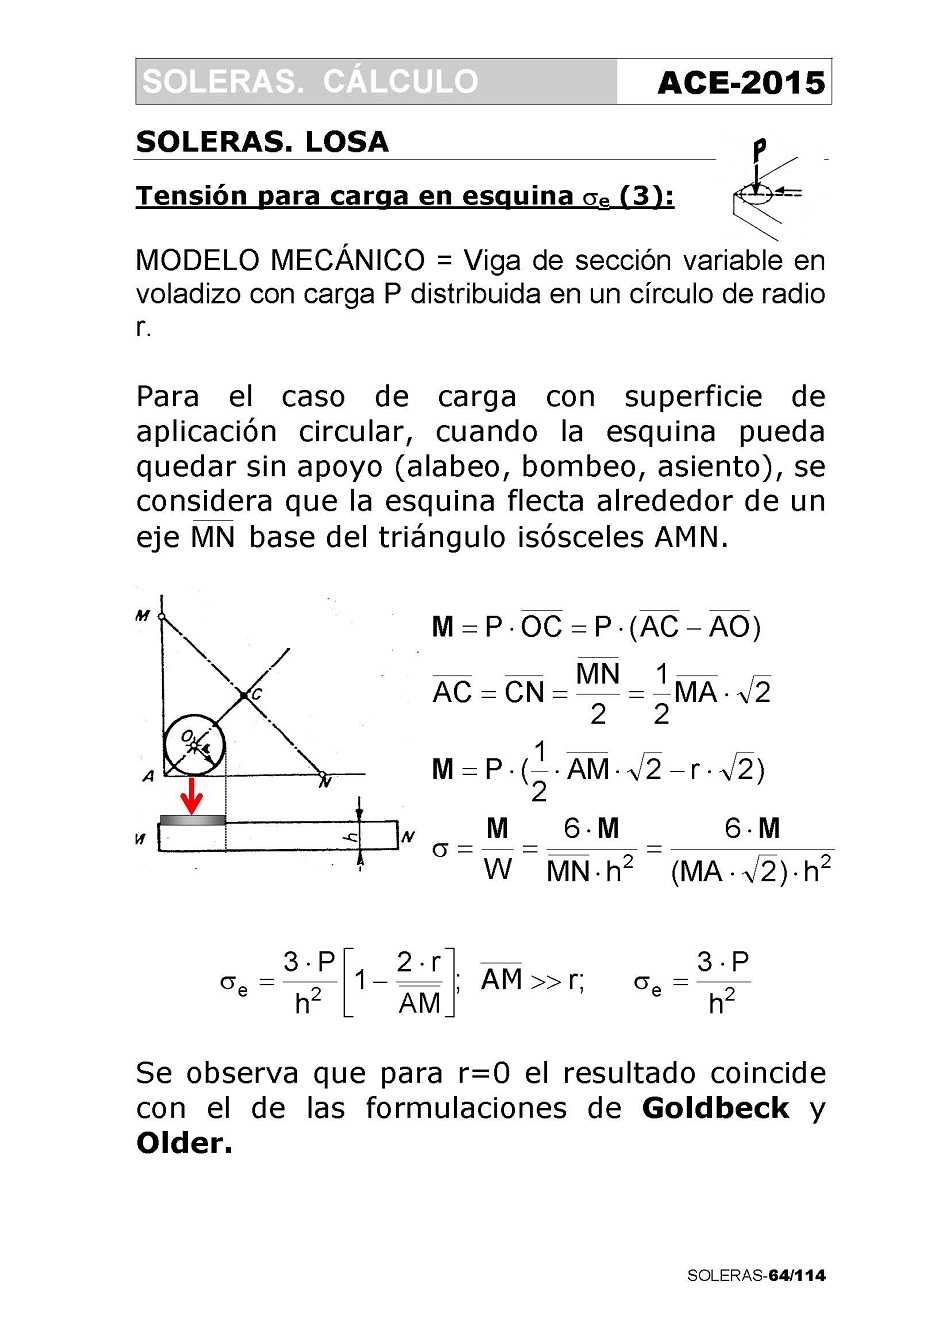 Cálculo de Soleras de Hormigón. Página 64